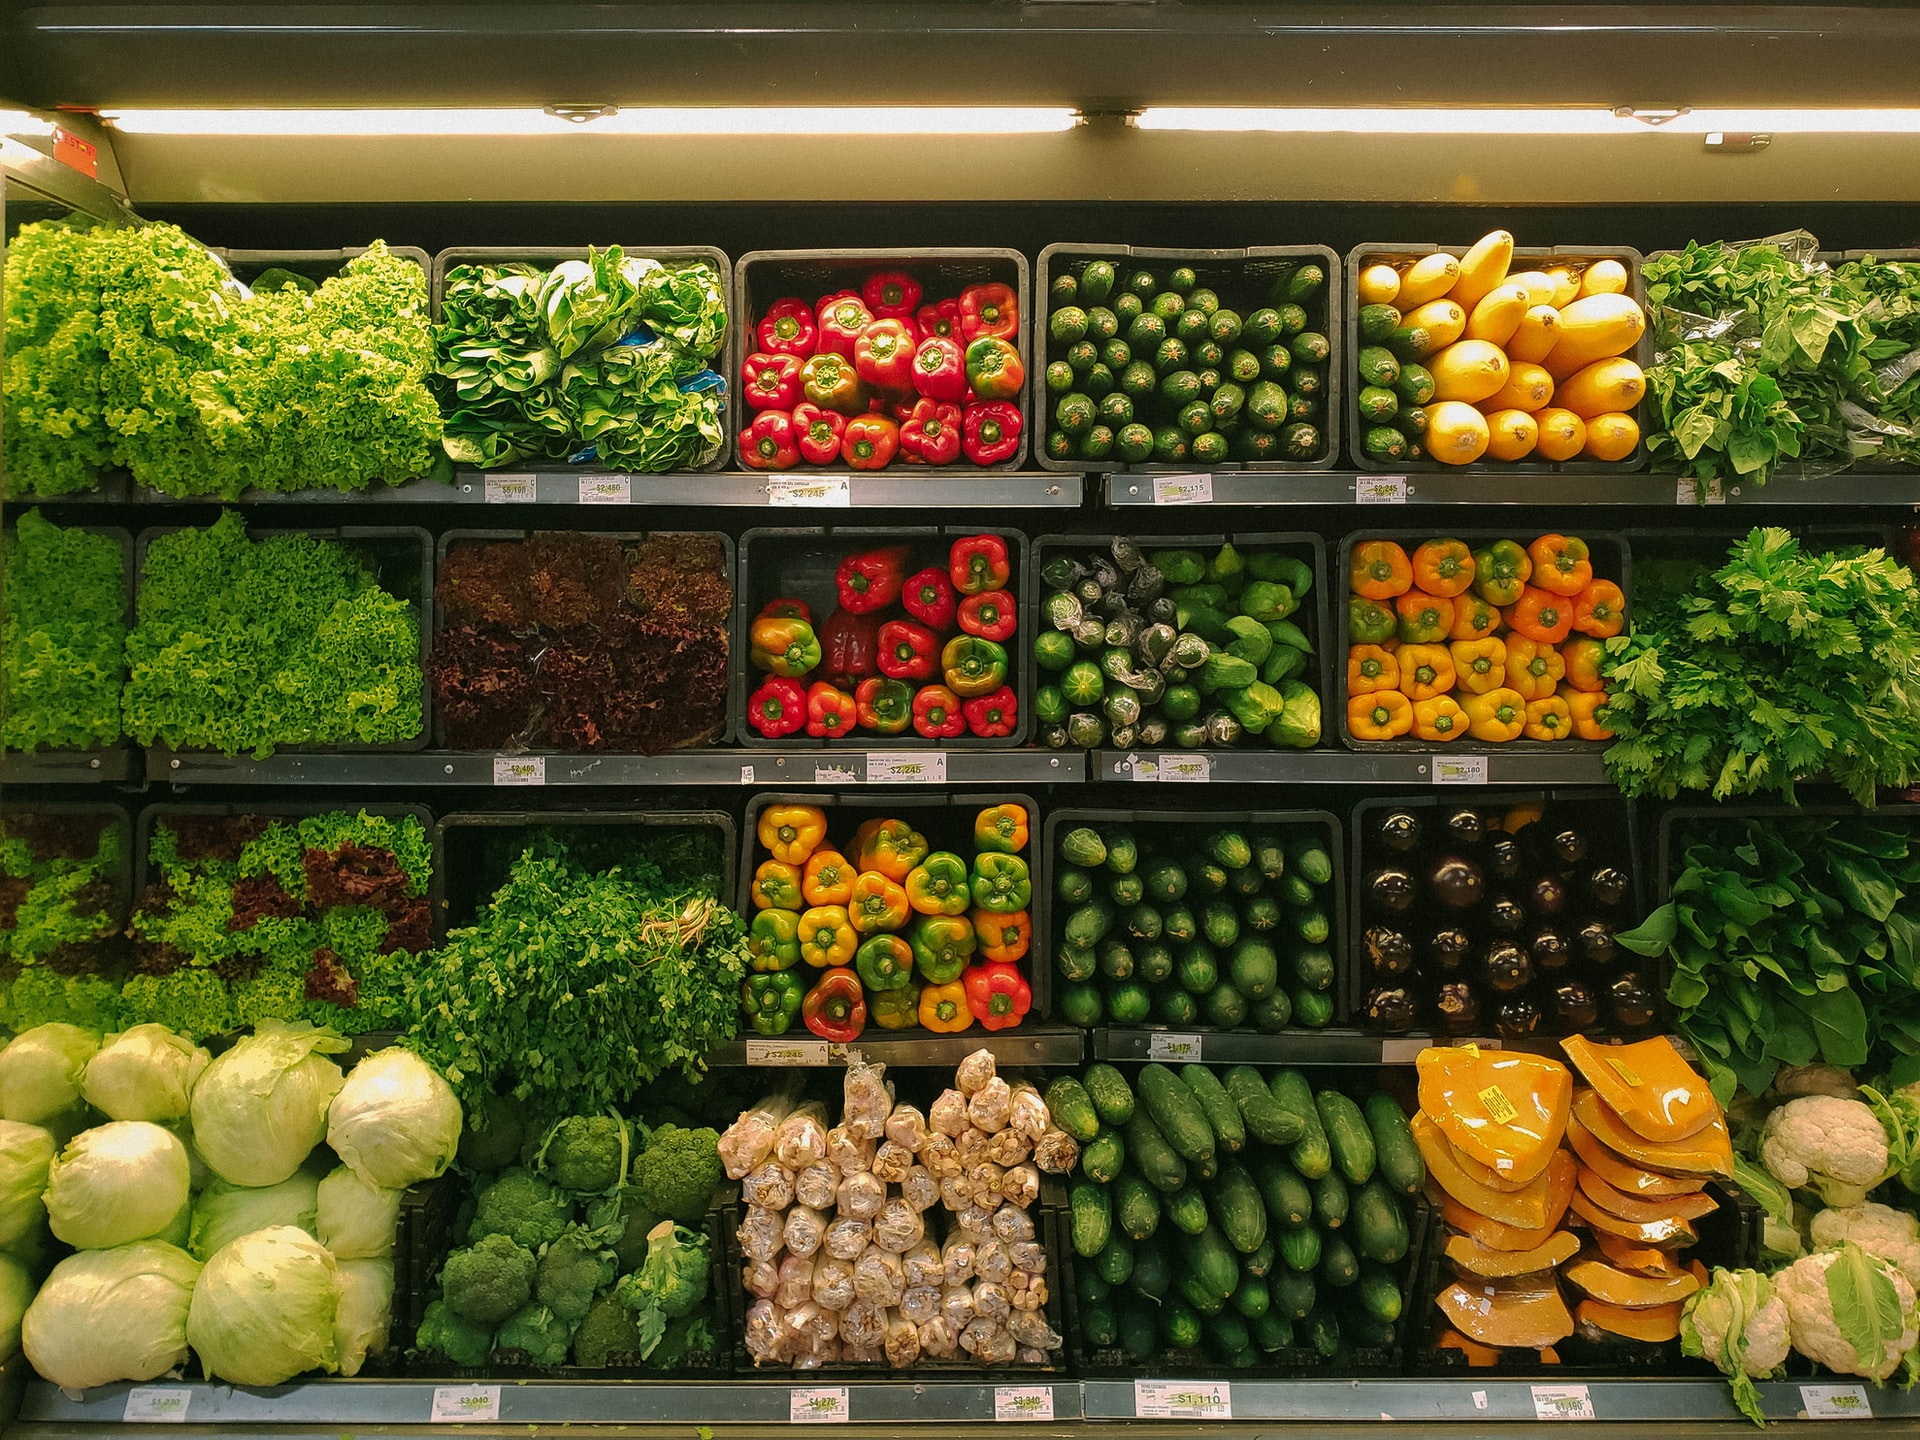 En 2023 estará prohibido vender frutas y verduras en envases de plástico en España, y las bebidas se ofrecerán en envases reutilizables en todos los establecimientos minoristas.